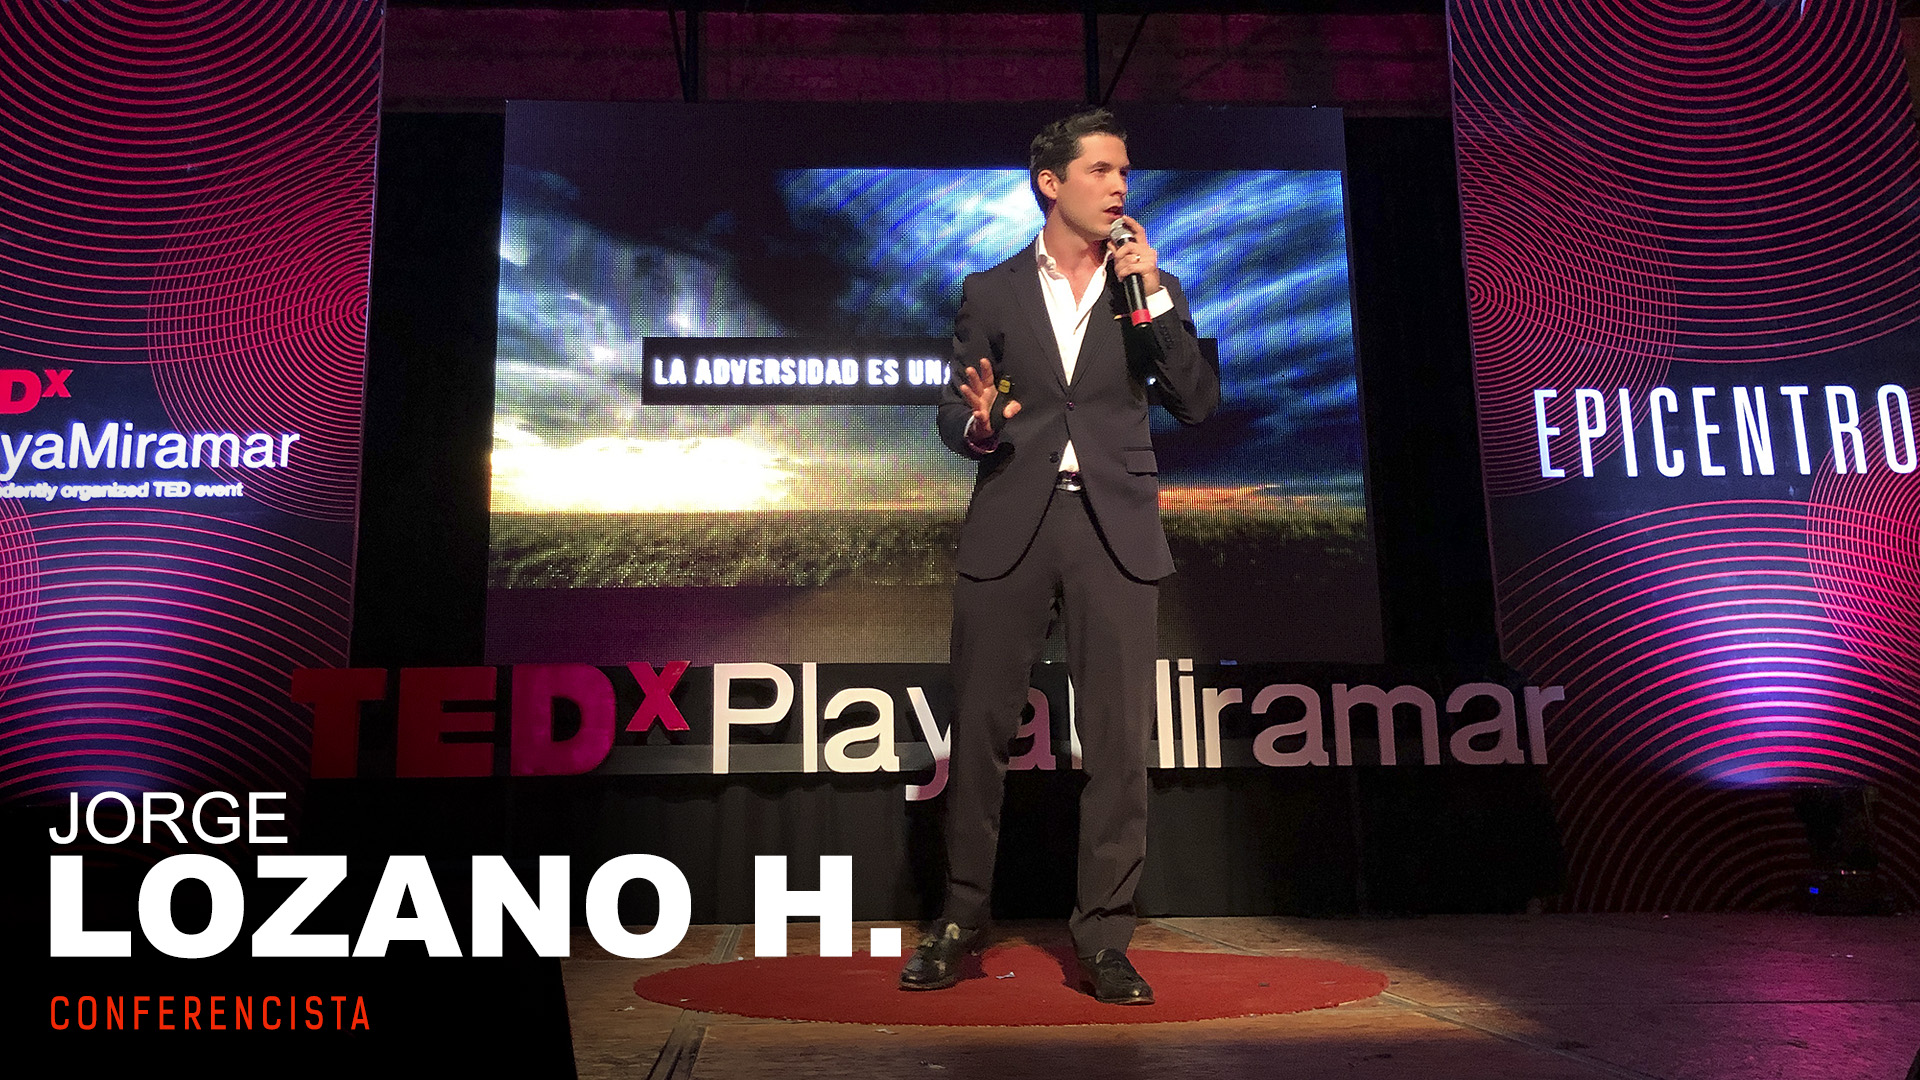 Gran cierre de TEDx Epicentro (Playa Miramar) con Jorge Lozano H.